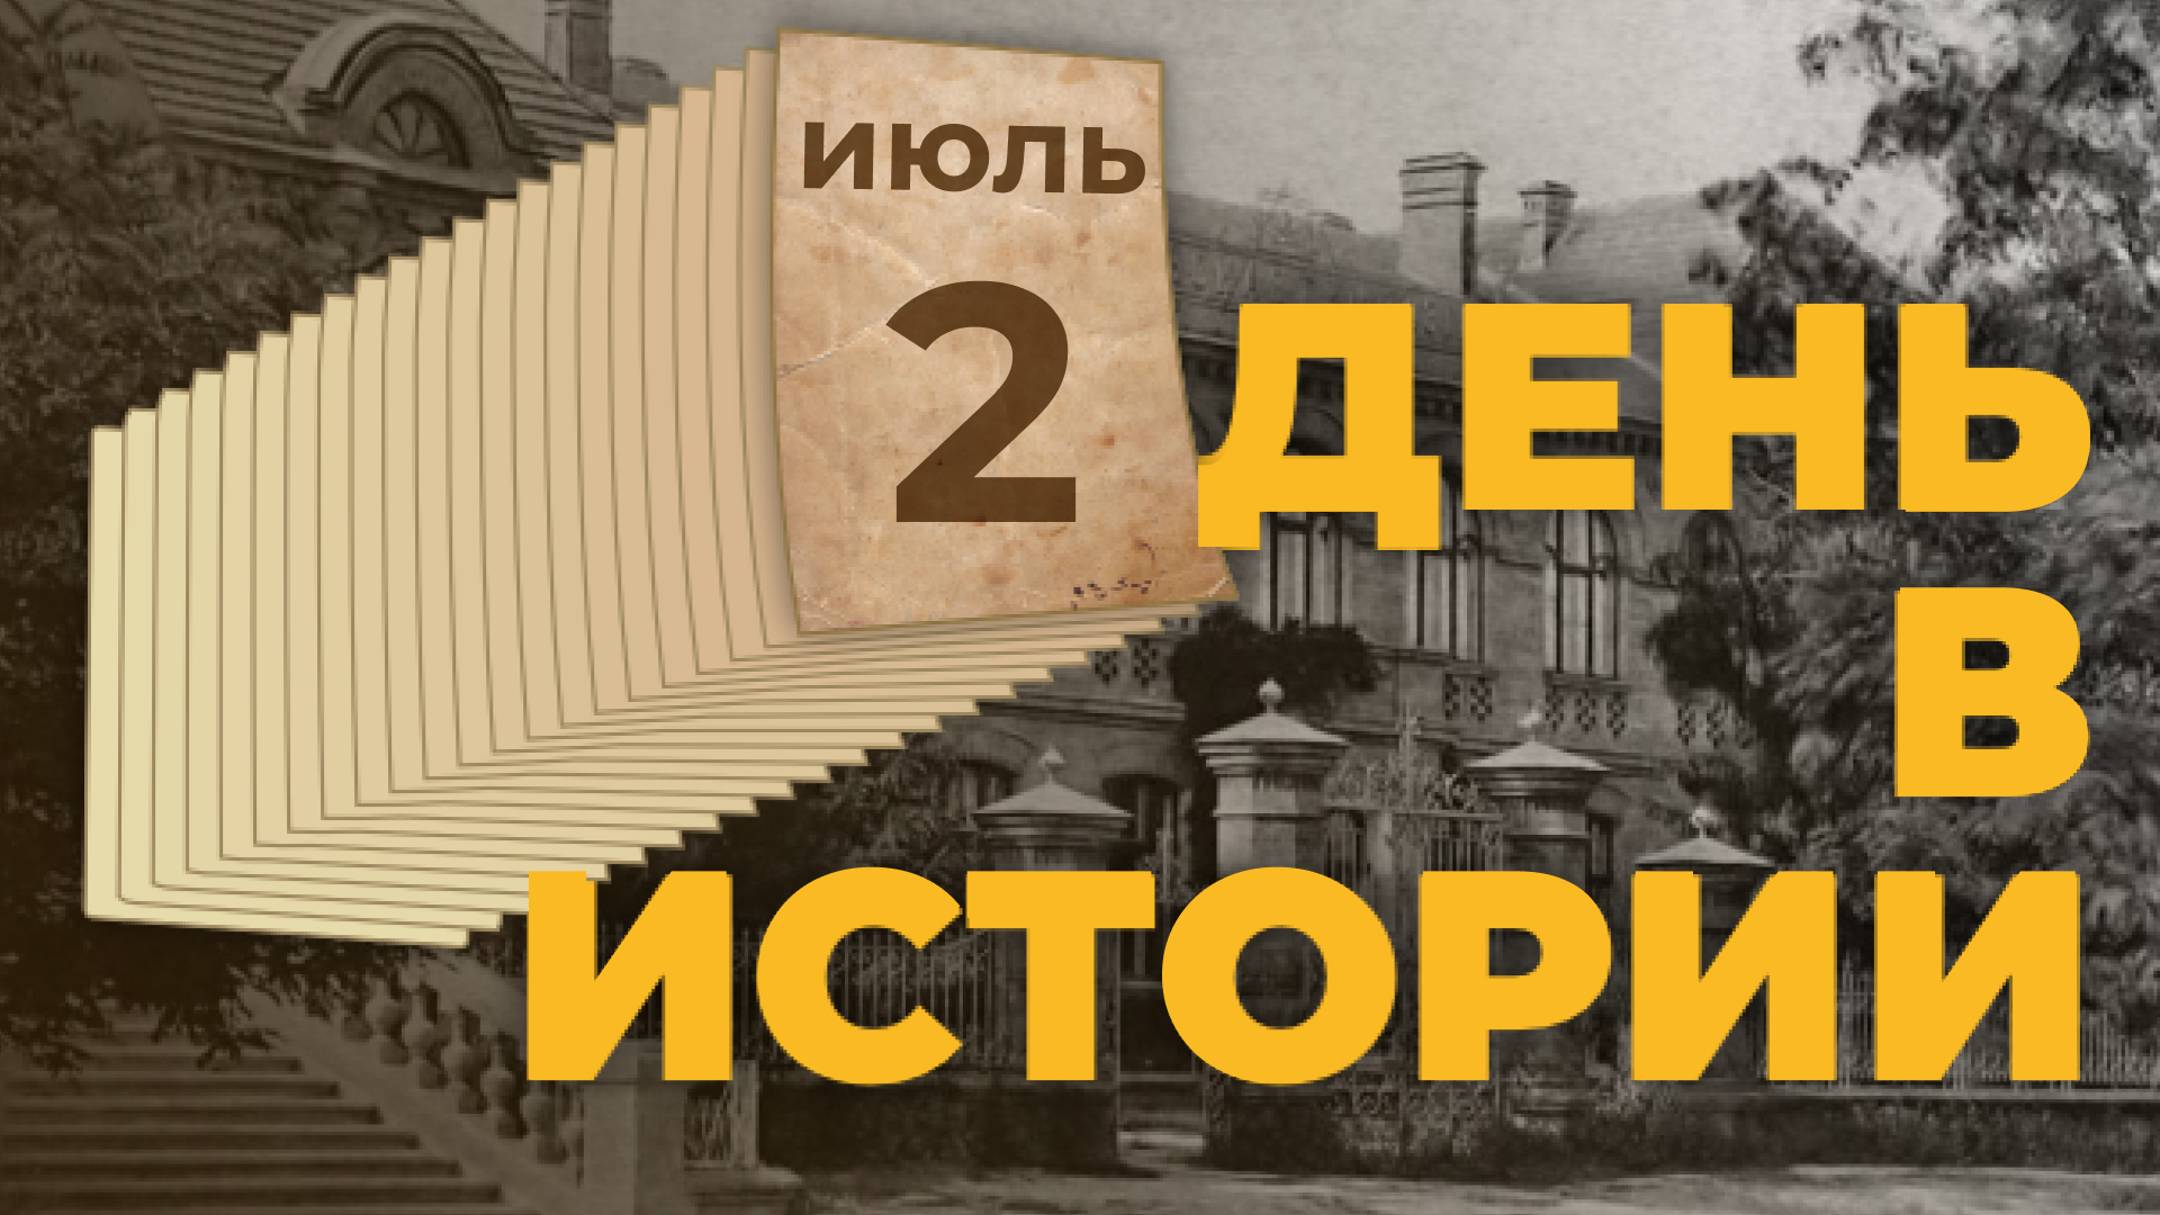 164 года назад основан город Владивосток. "День в истории"